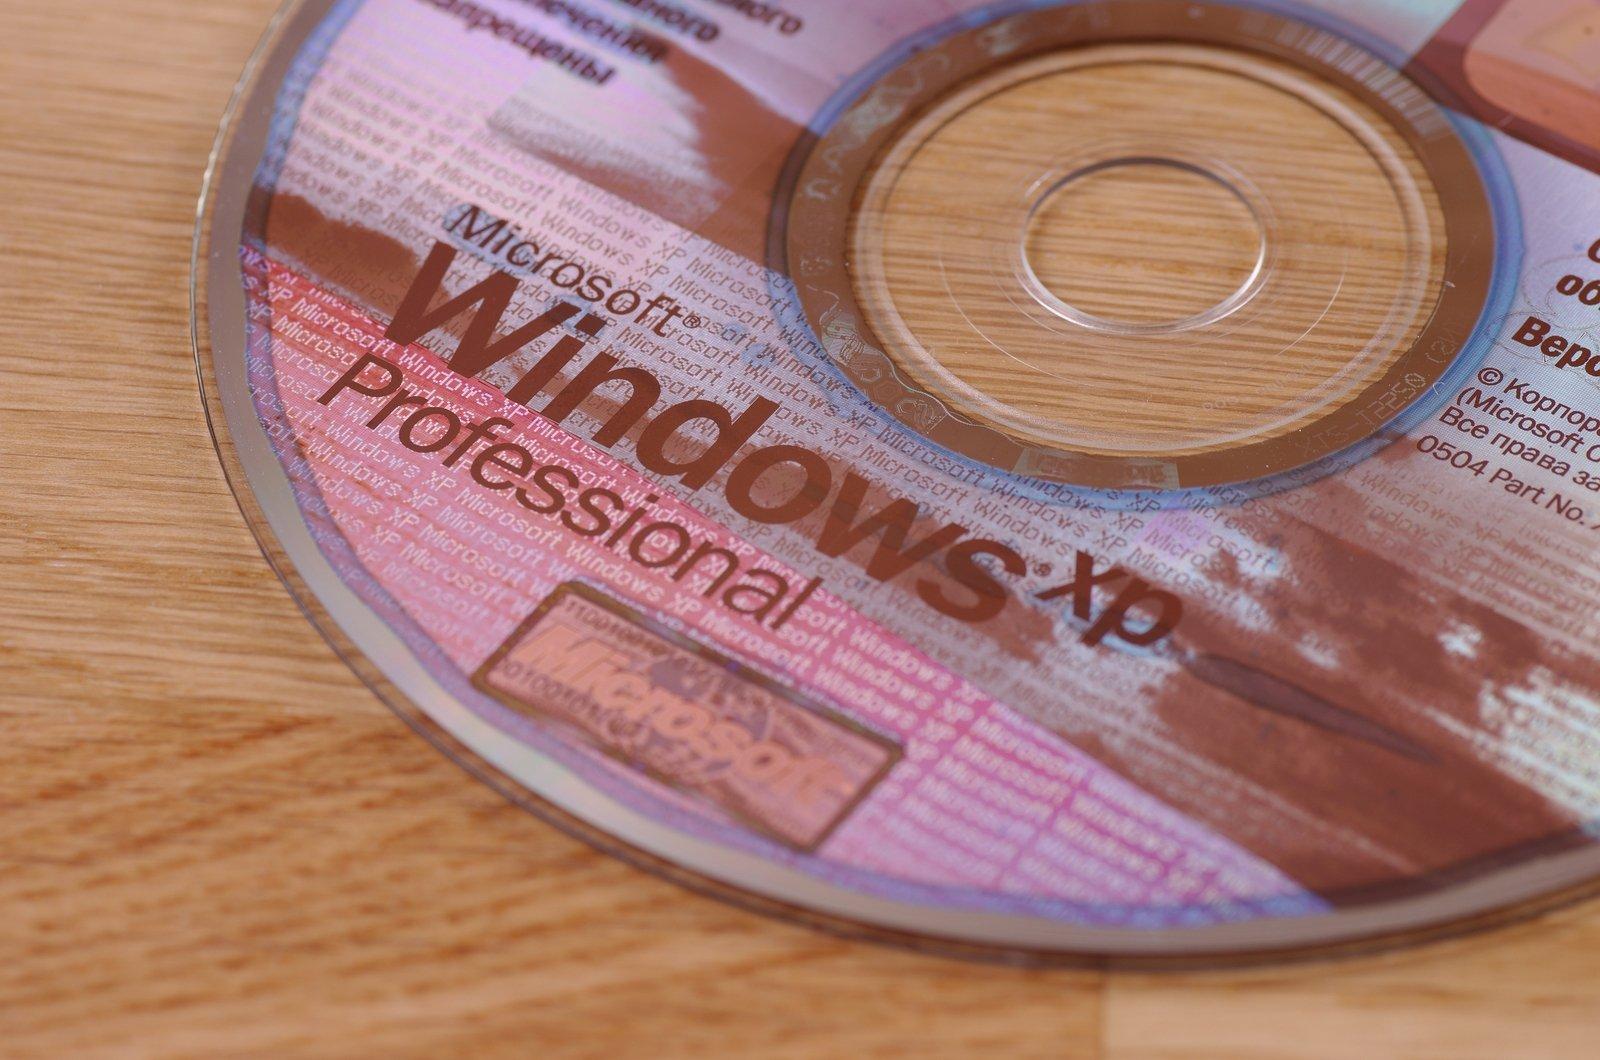 Windows XP : la fin annoncée le 8 avril par pop-up aux utilisateurs - Cover Image